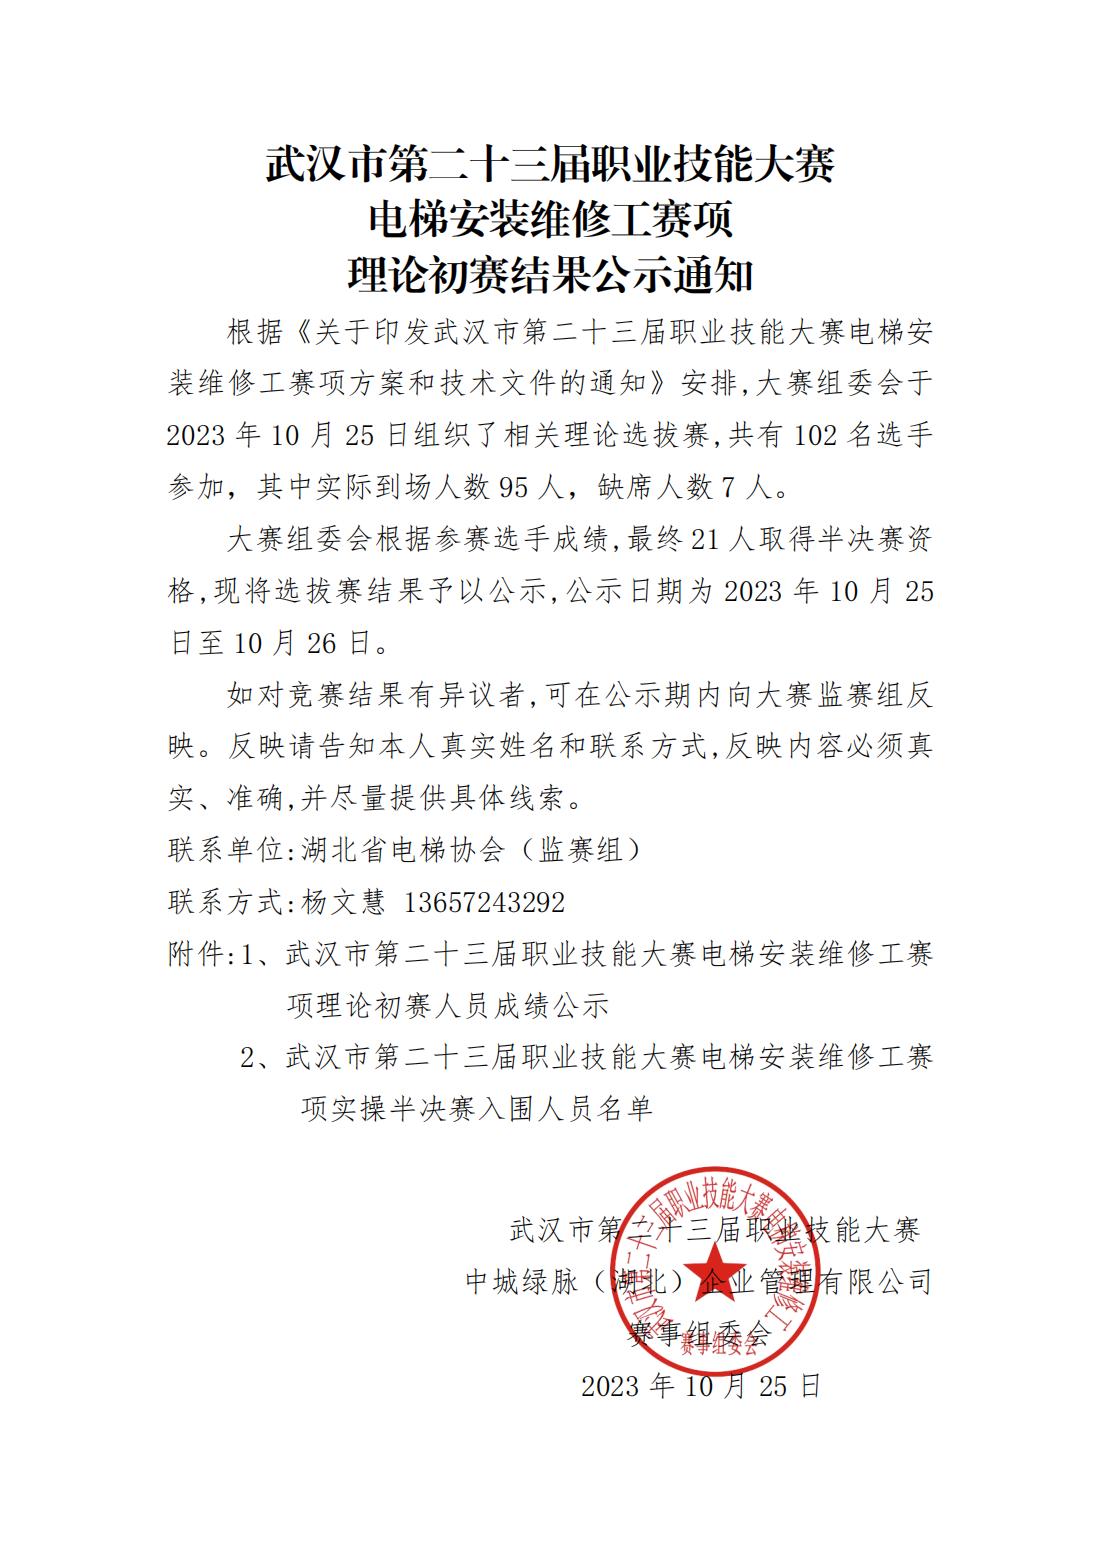 武汉市第二十三届职业技能大赛 电梯安装维修工赛项 理论初赛结果公示通知